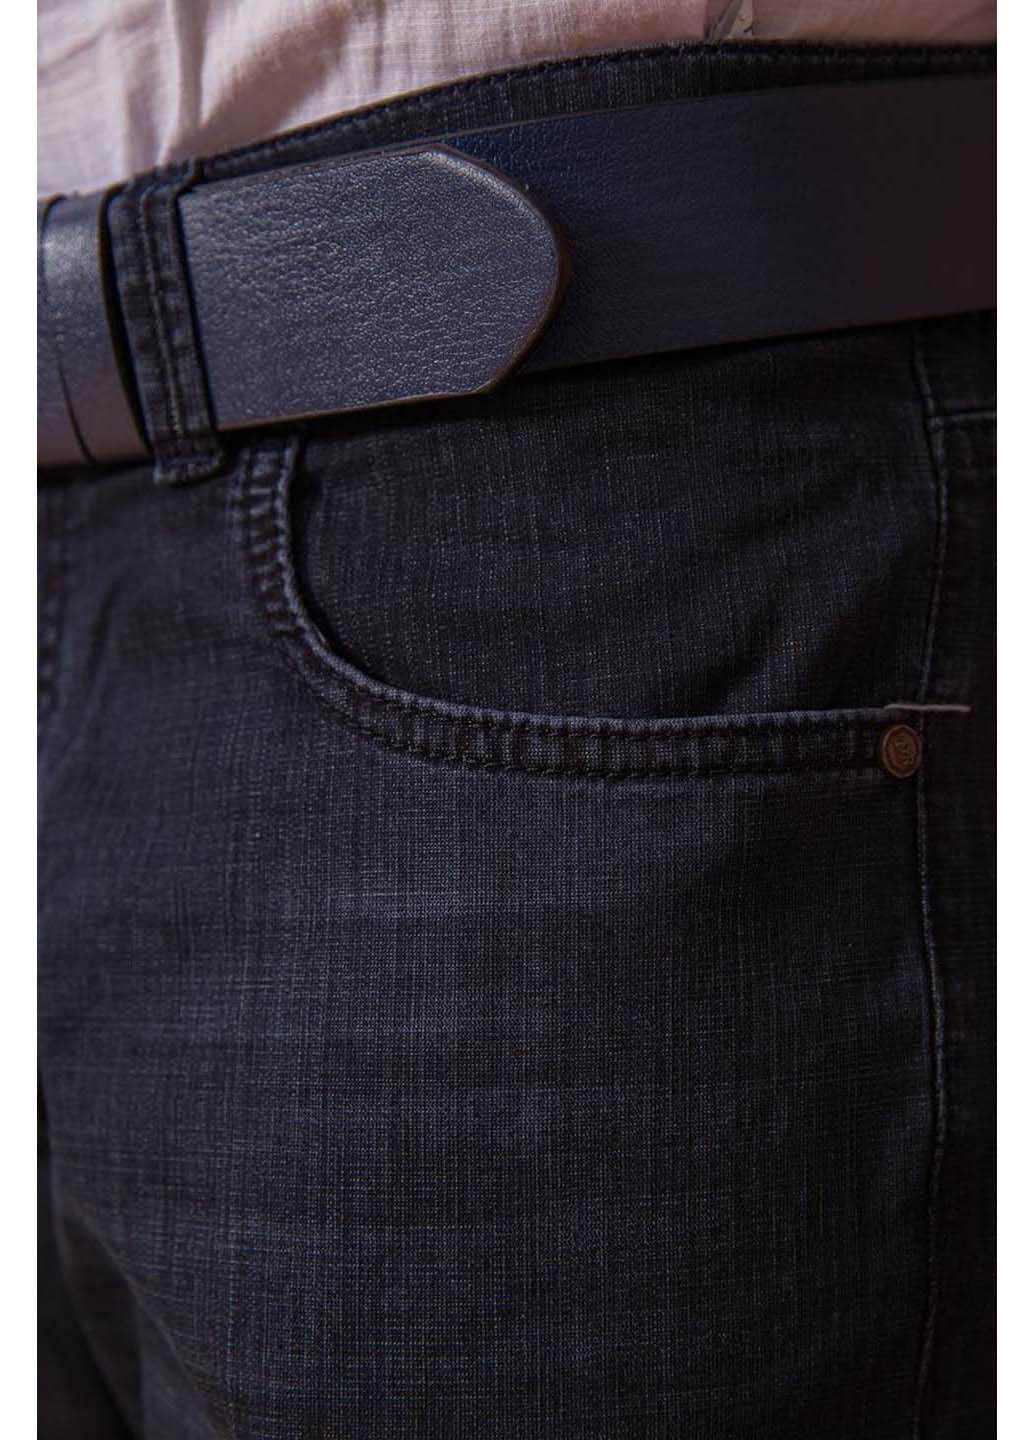 Комбинированные демисезонные прямые джинсы Ager